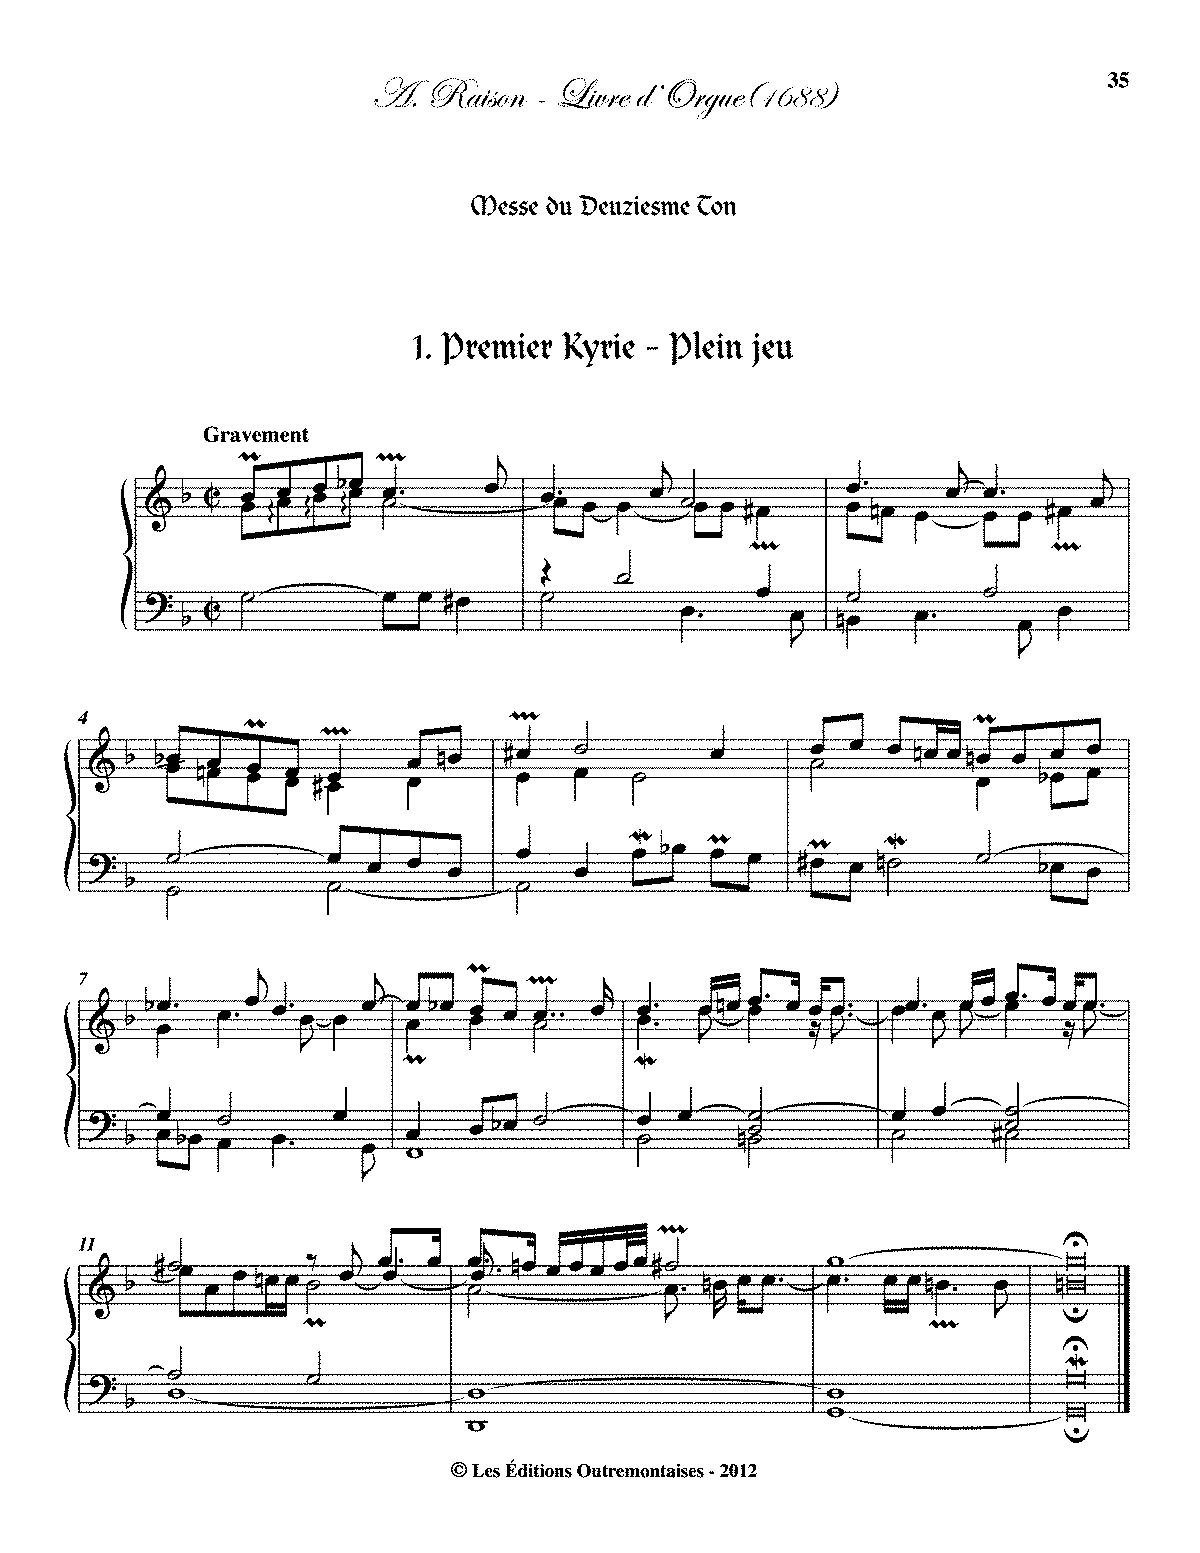 Livre d'orgue (Raison, André) - IMSLP